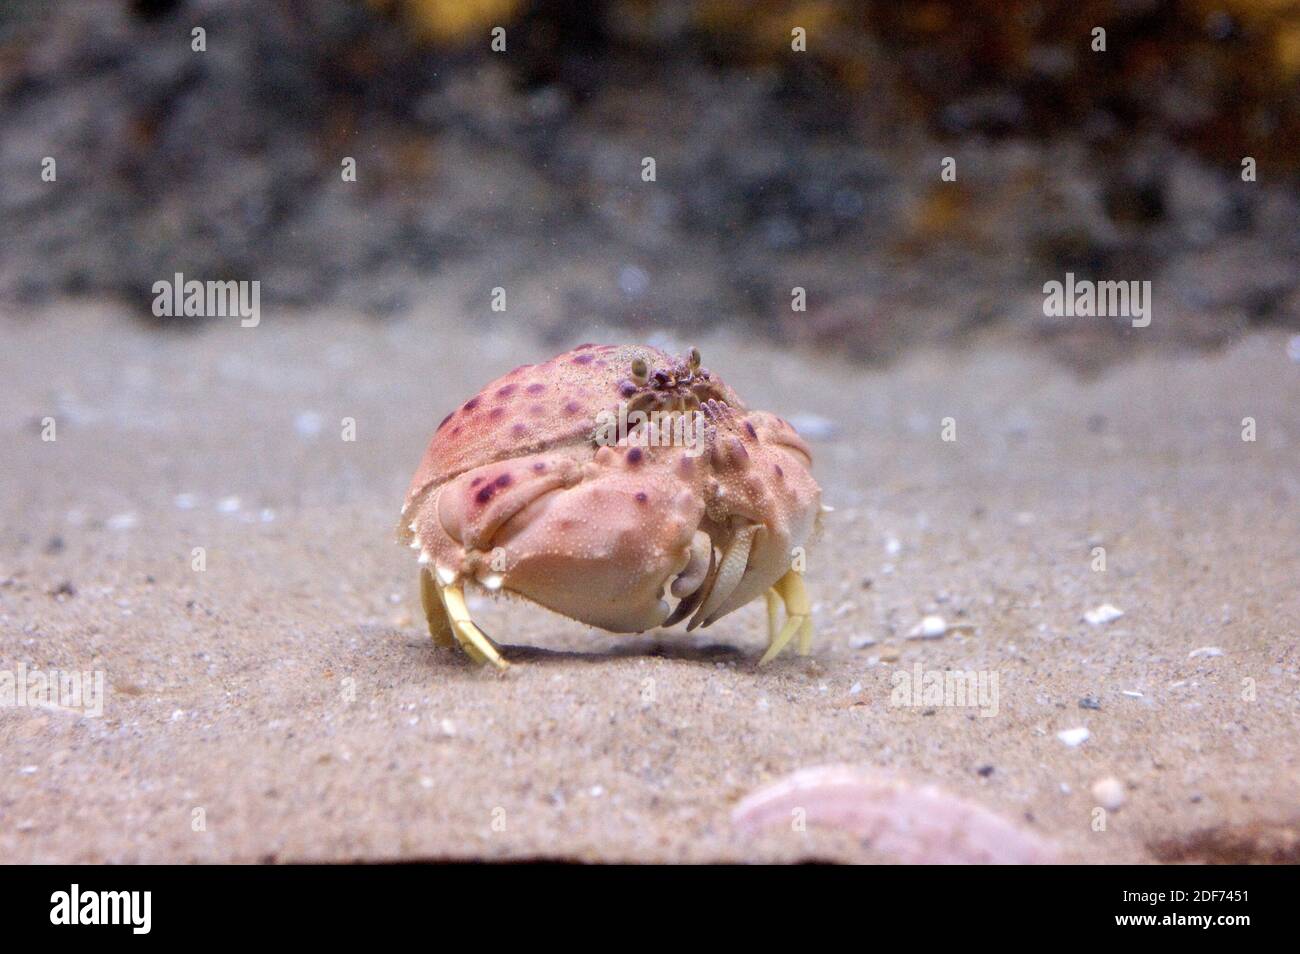 Le crabe commun (Calappa granulata) est un crustacé marin originaire de la mer Méditerranée et des îles Canaries. Banque D'Images